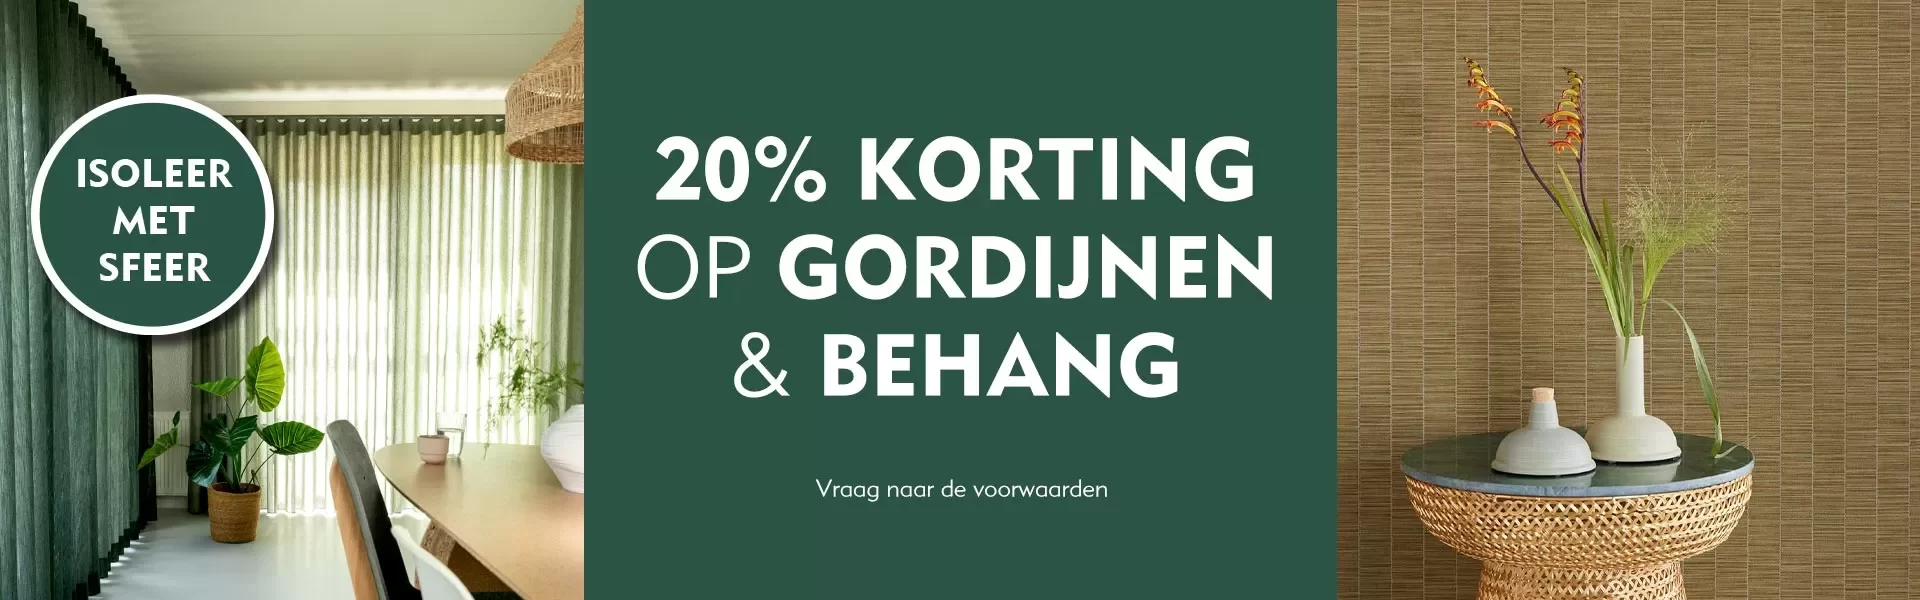 Actie 3 - Gordijnen & Behang - 20%